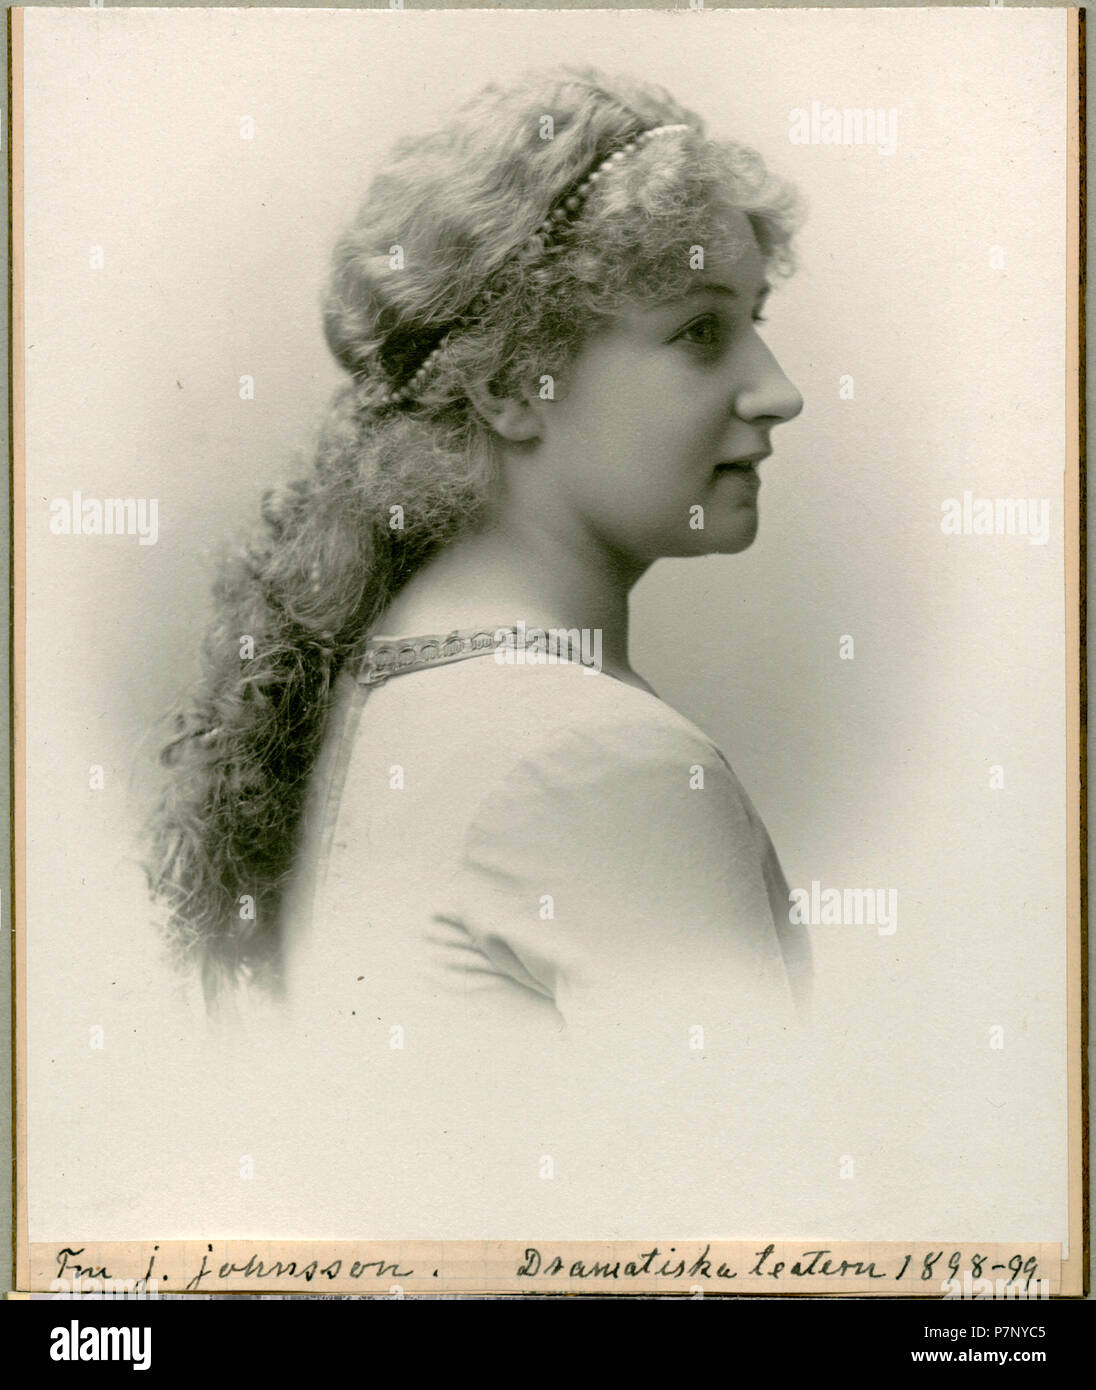 J. Johnsson, Dramatiska teatern 1898 205 Iréne Johnsson, porträtt - SMV - H4 189 Stock Photo